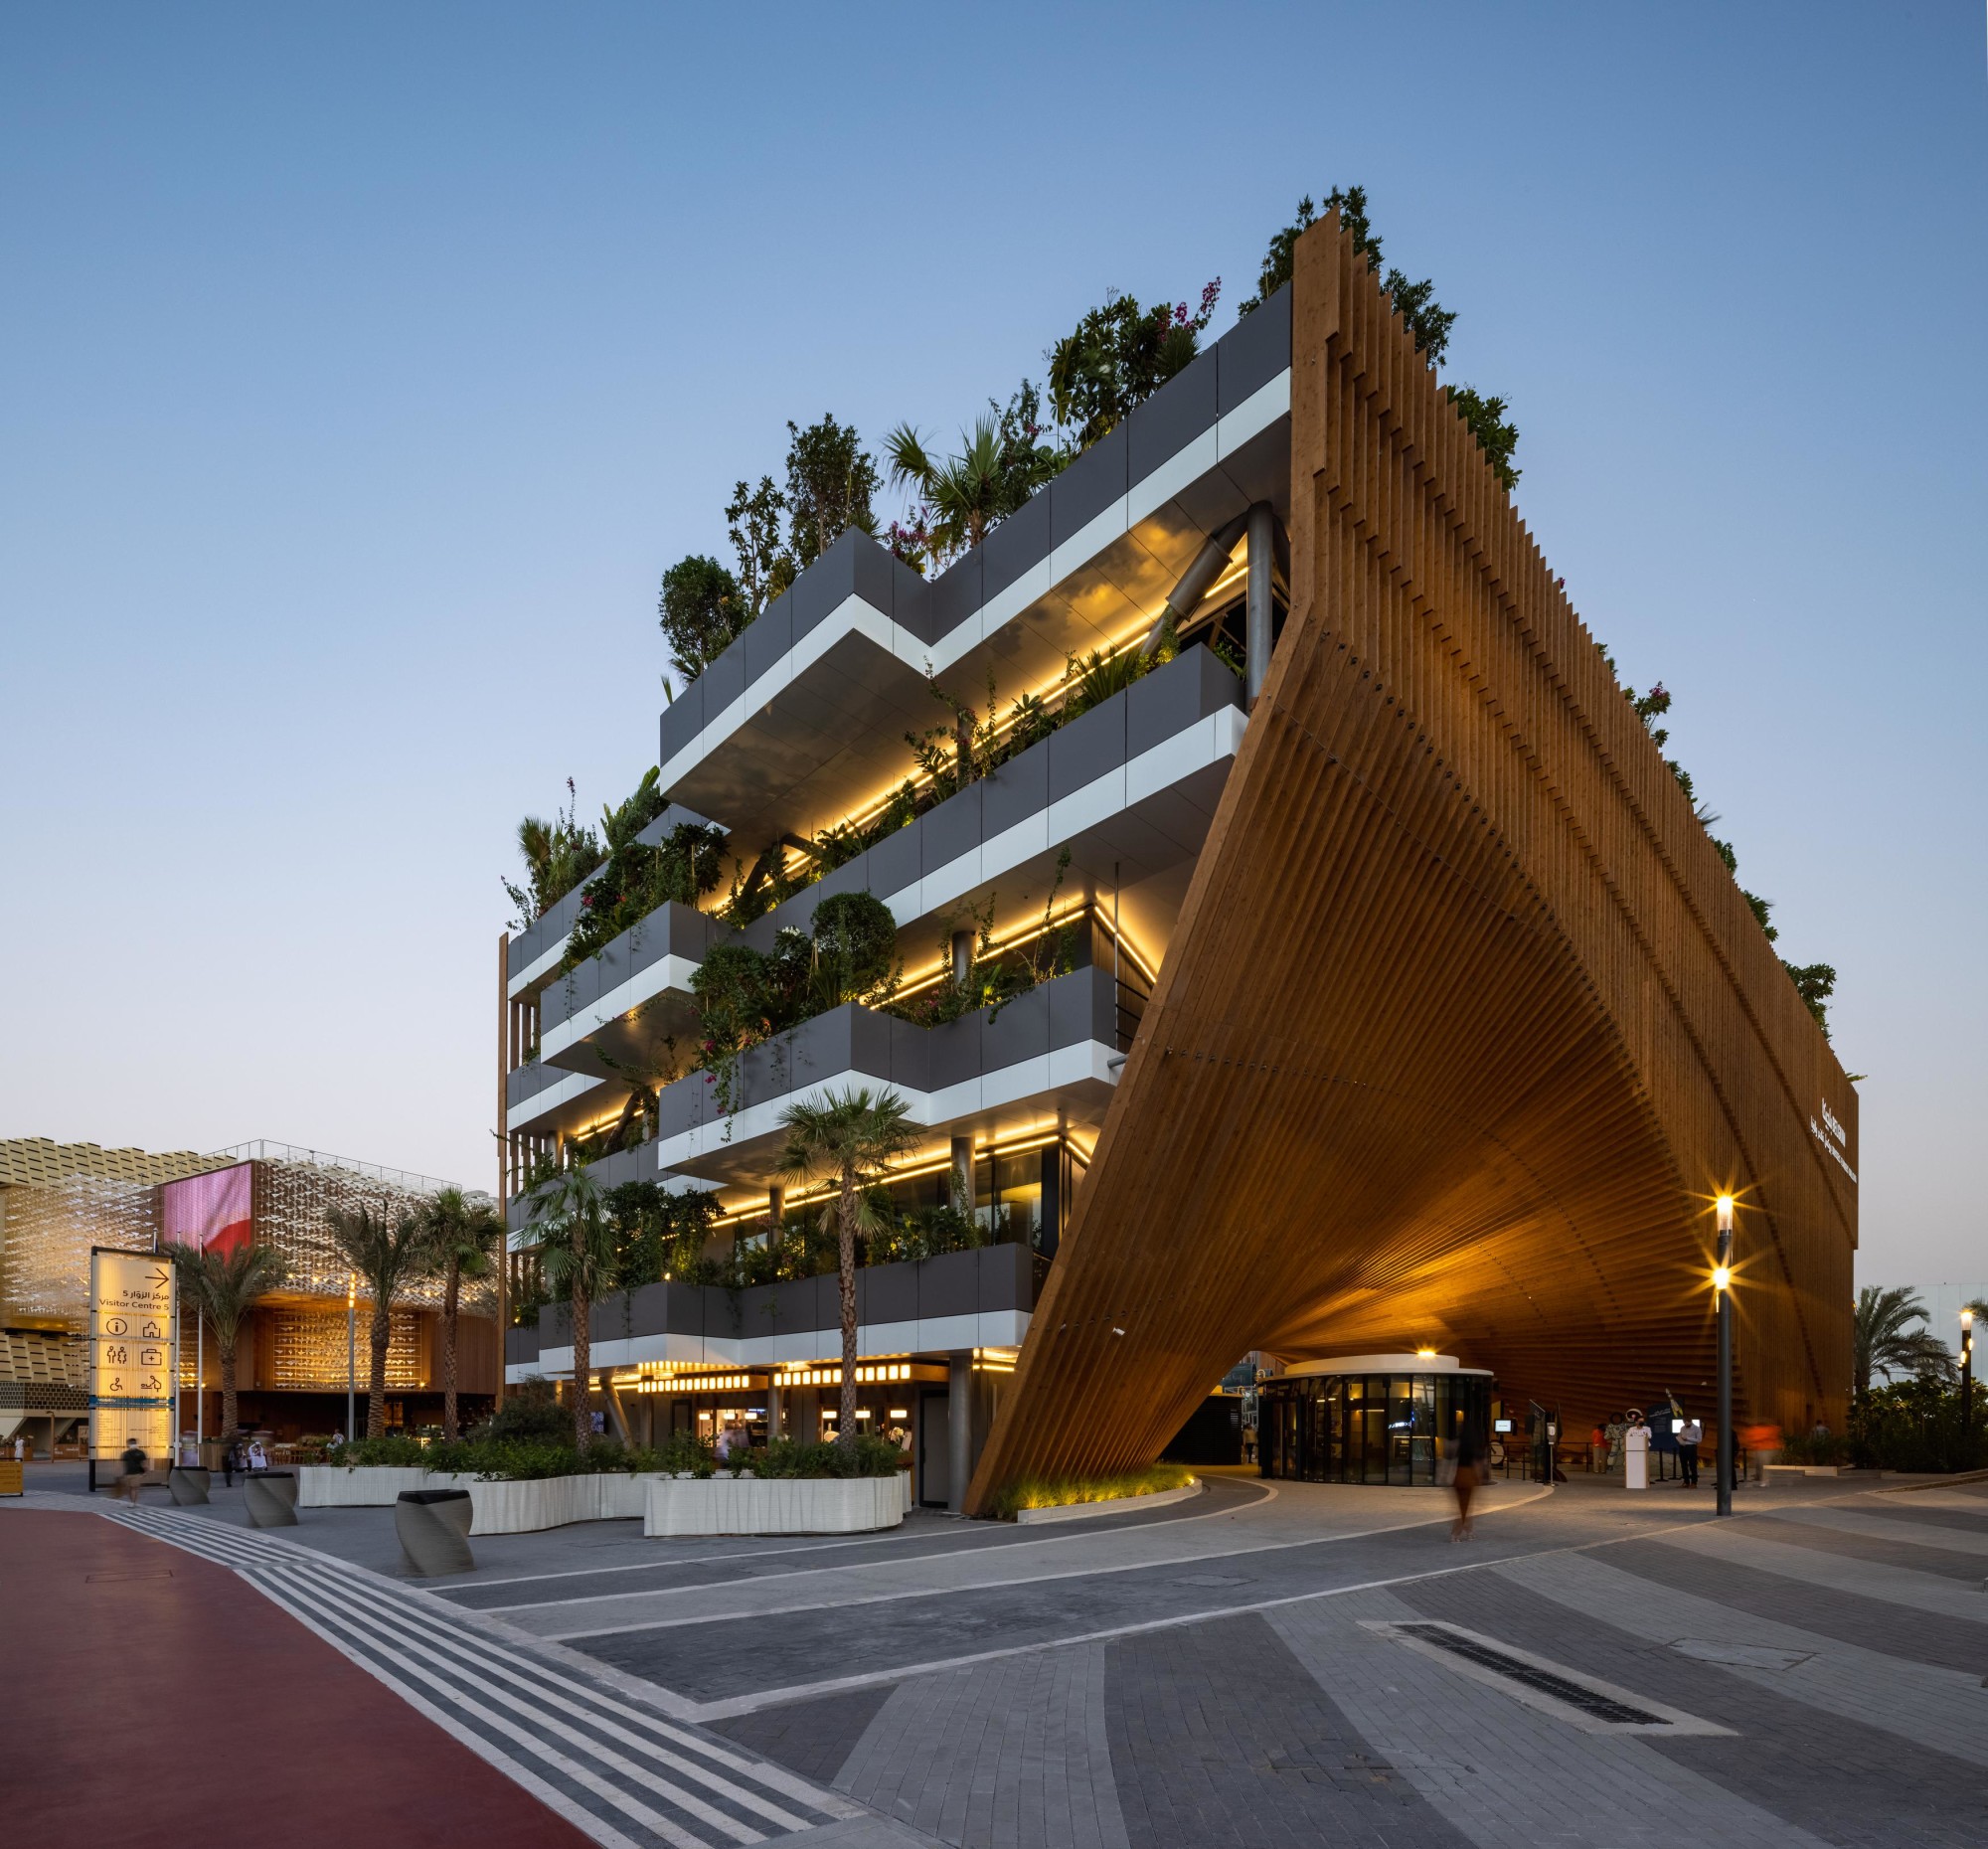 The Green Arch Belgian Pavilion Expo 2020 Dubai / Vincent Callebaut  Architectures + assar architects